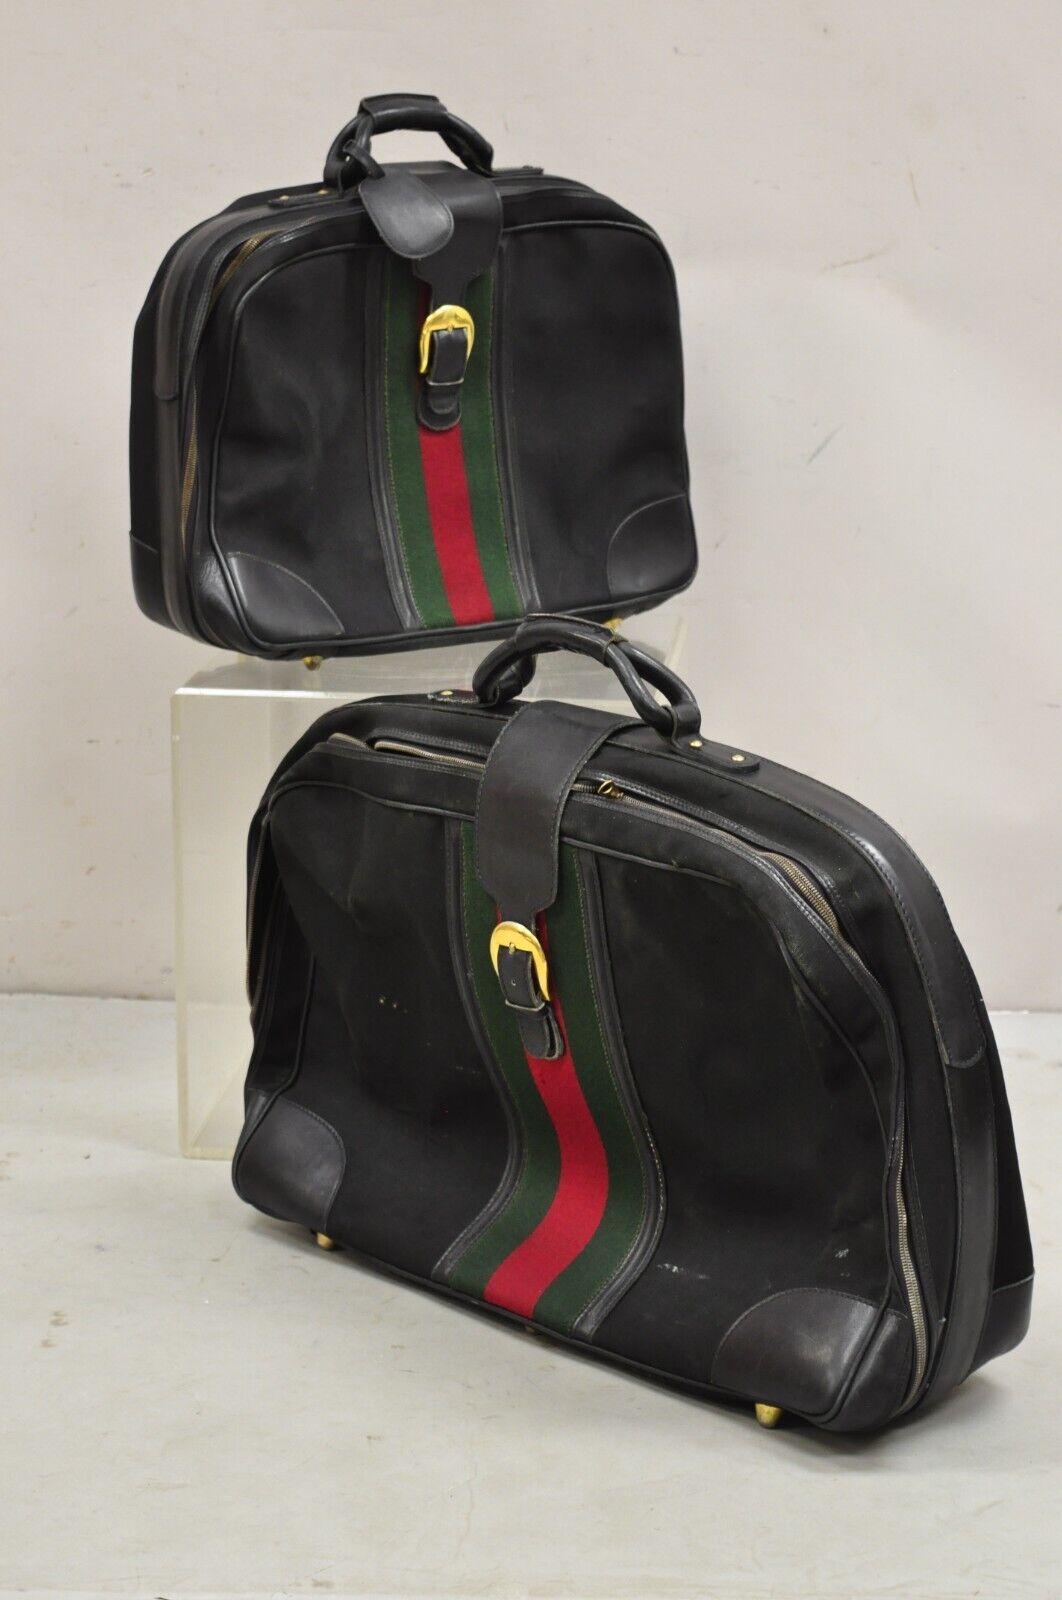 Vintage Gucci Black Canvas & Leather Suitcase Luggage Travel Bag Set - 2 Pcs For Sale 7